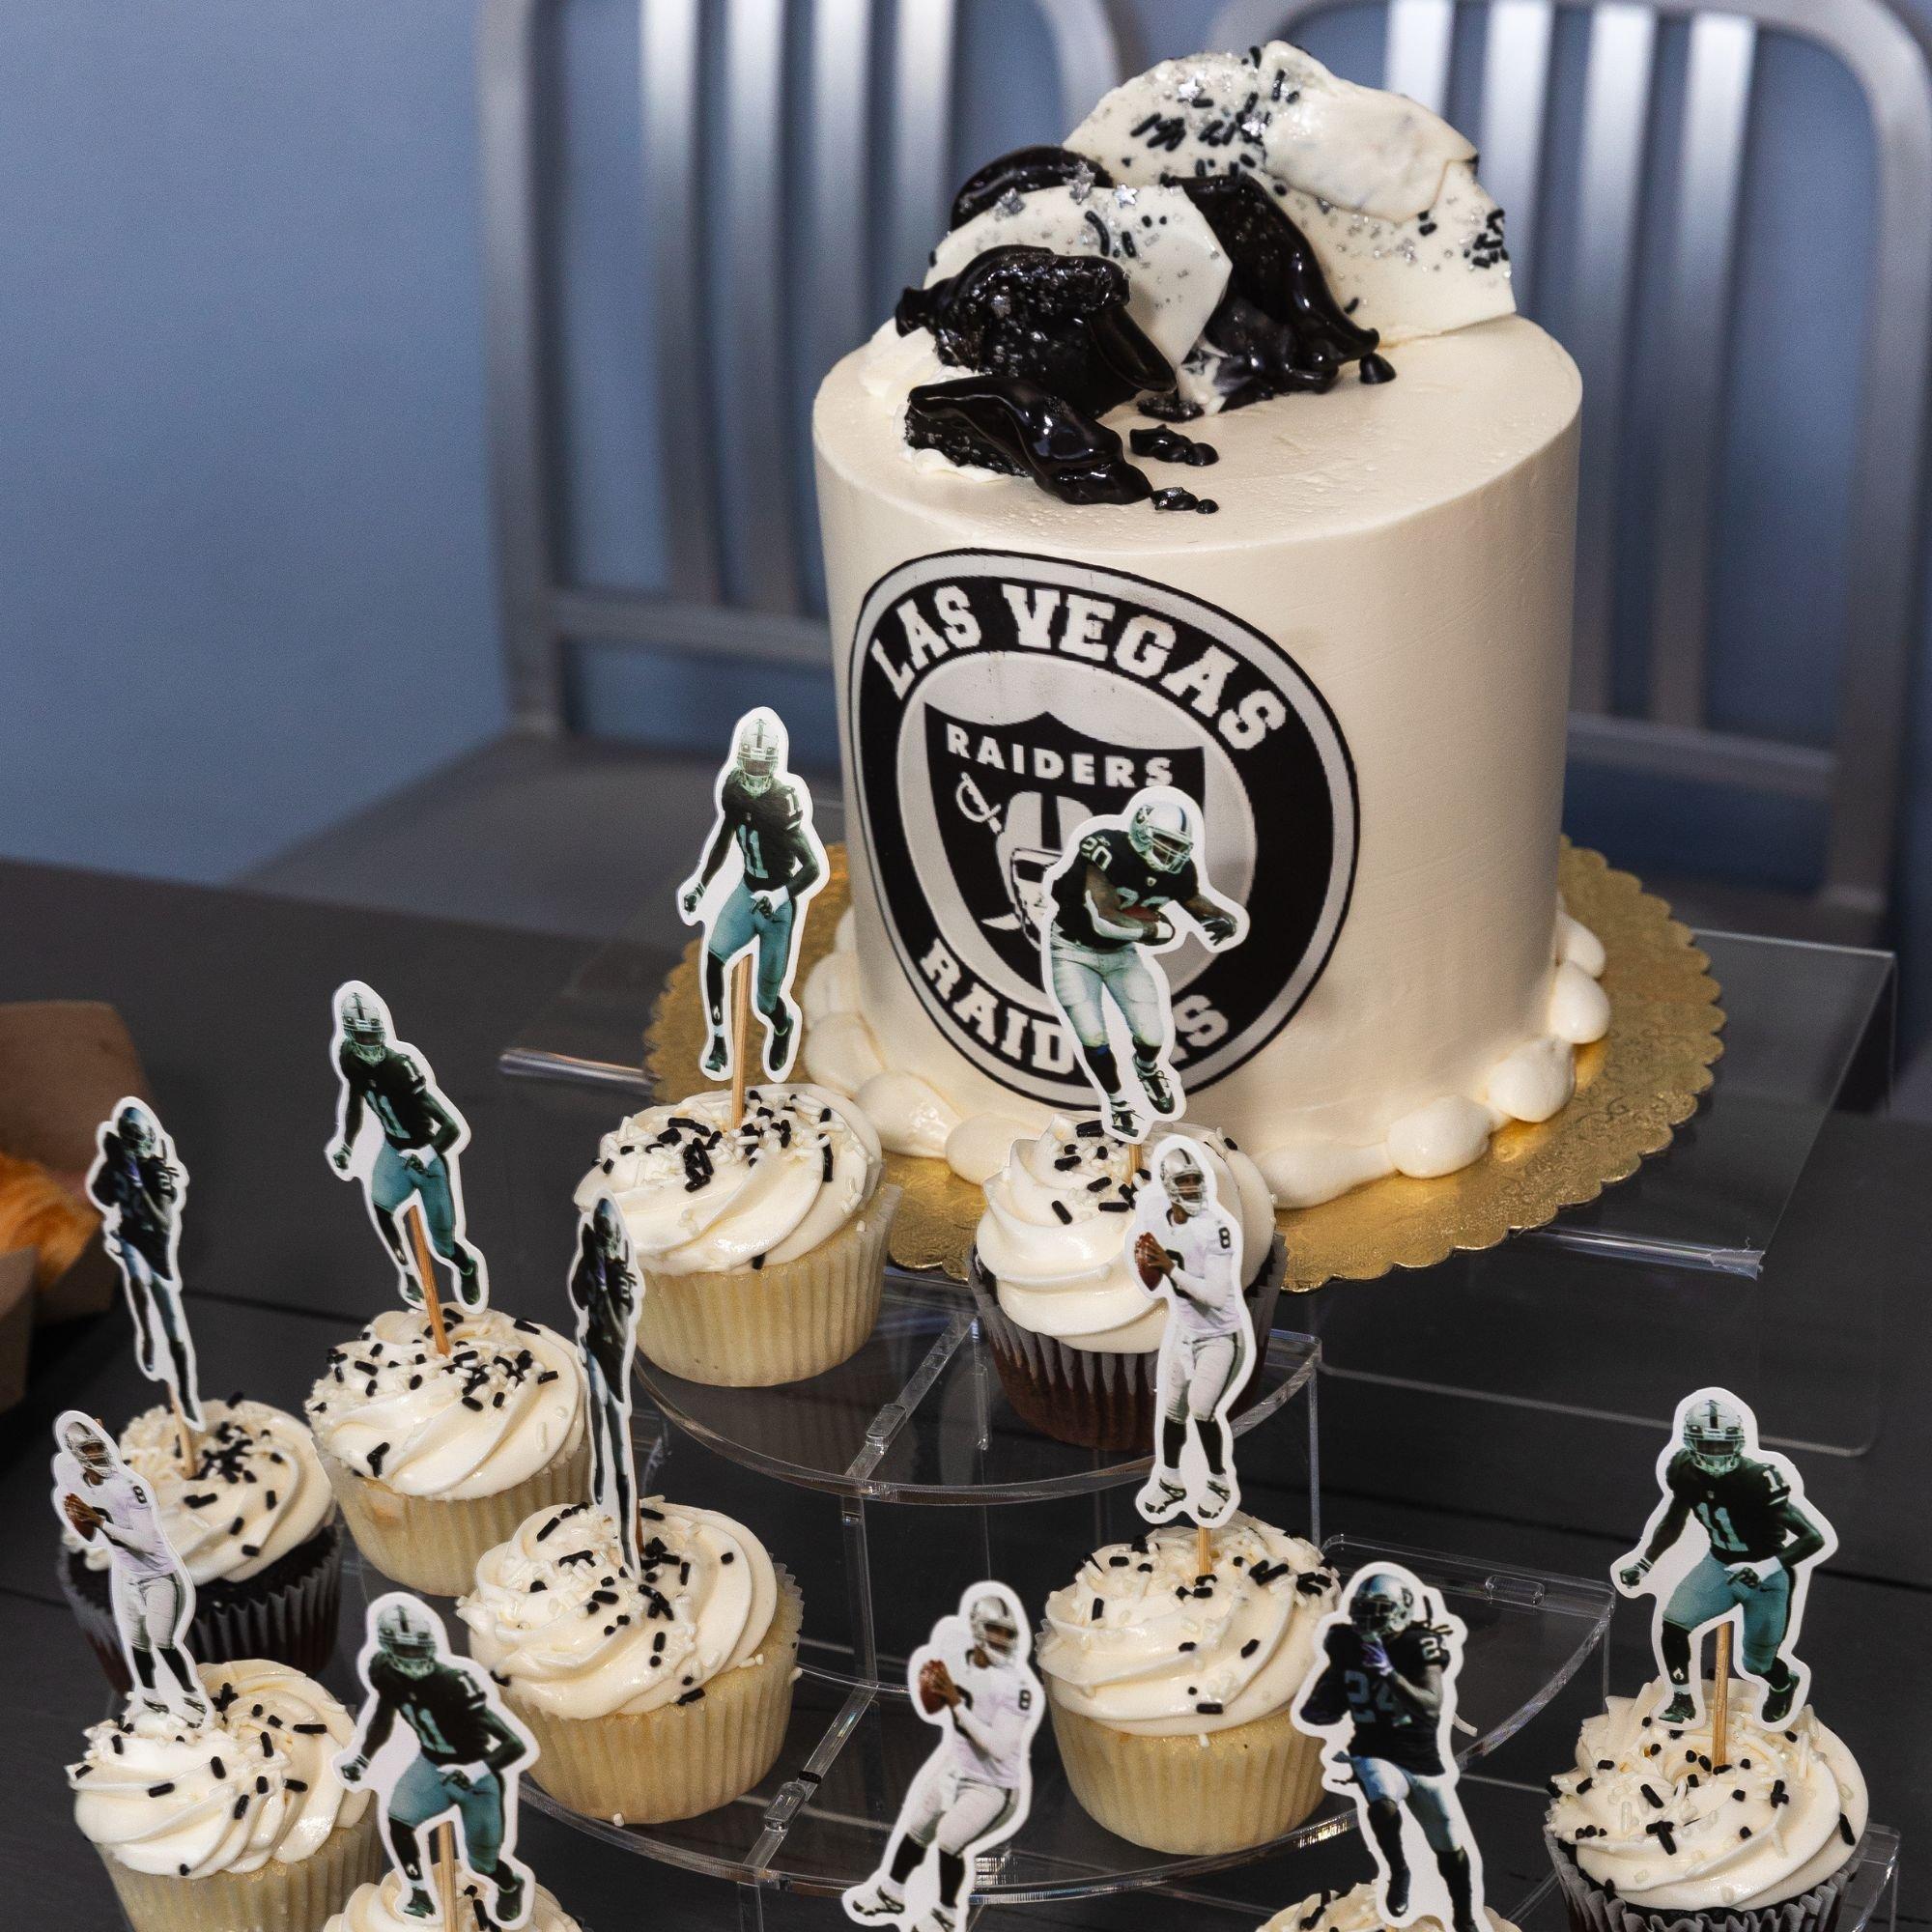 Raiders Super Fan Cake - Rolling in Dough Bakery